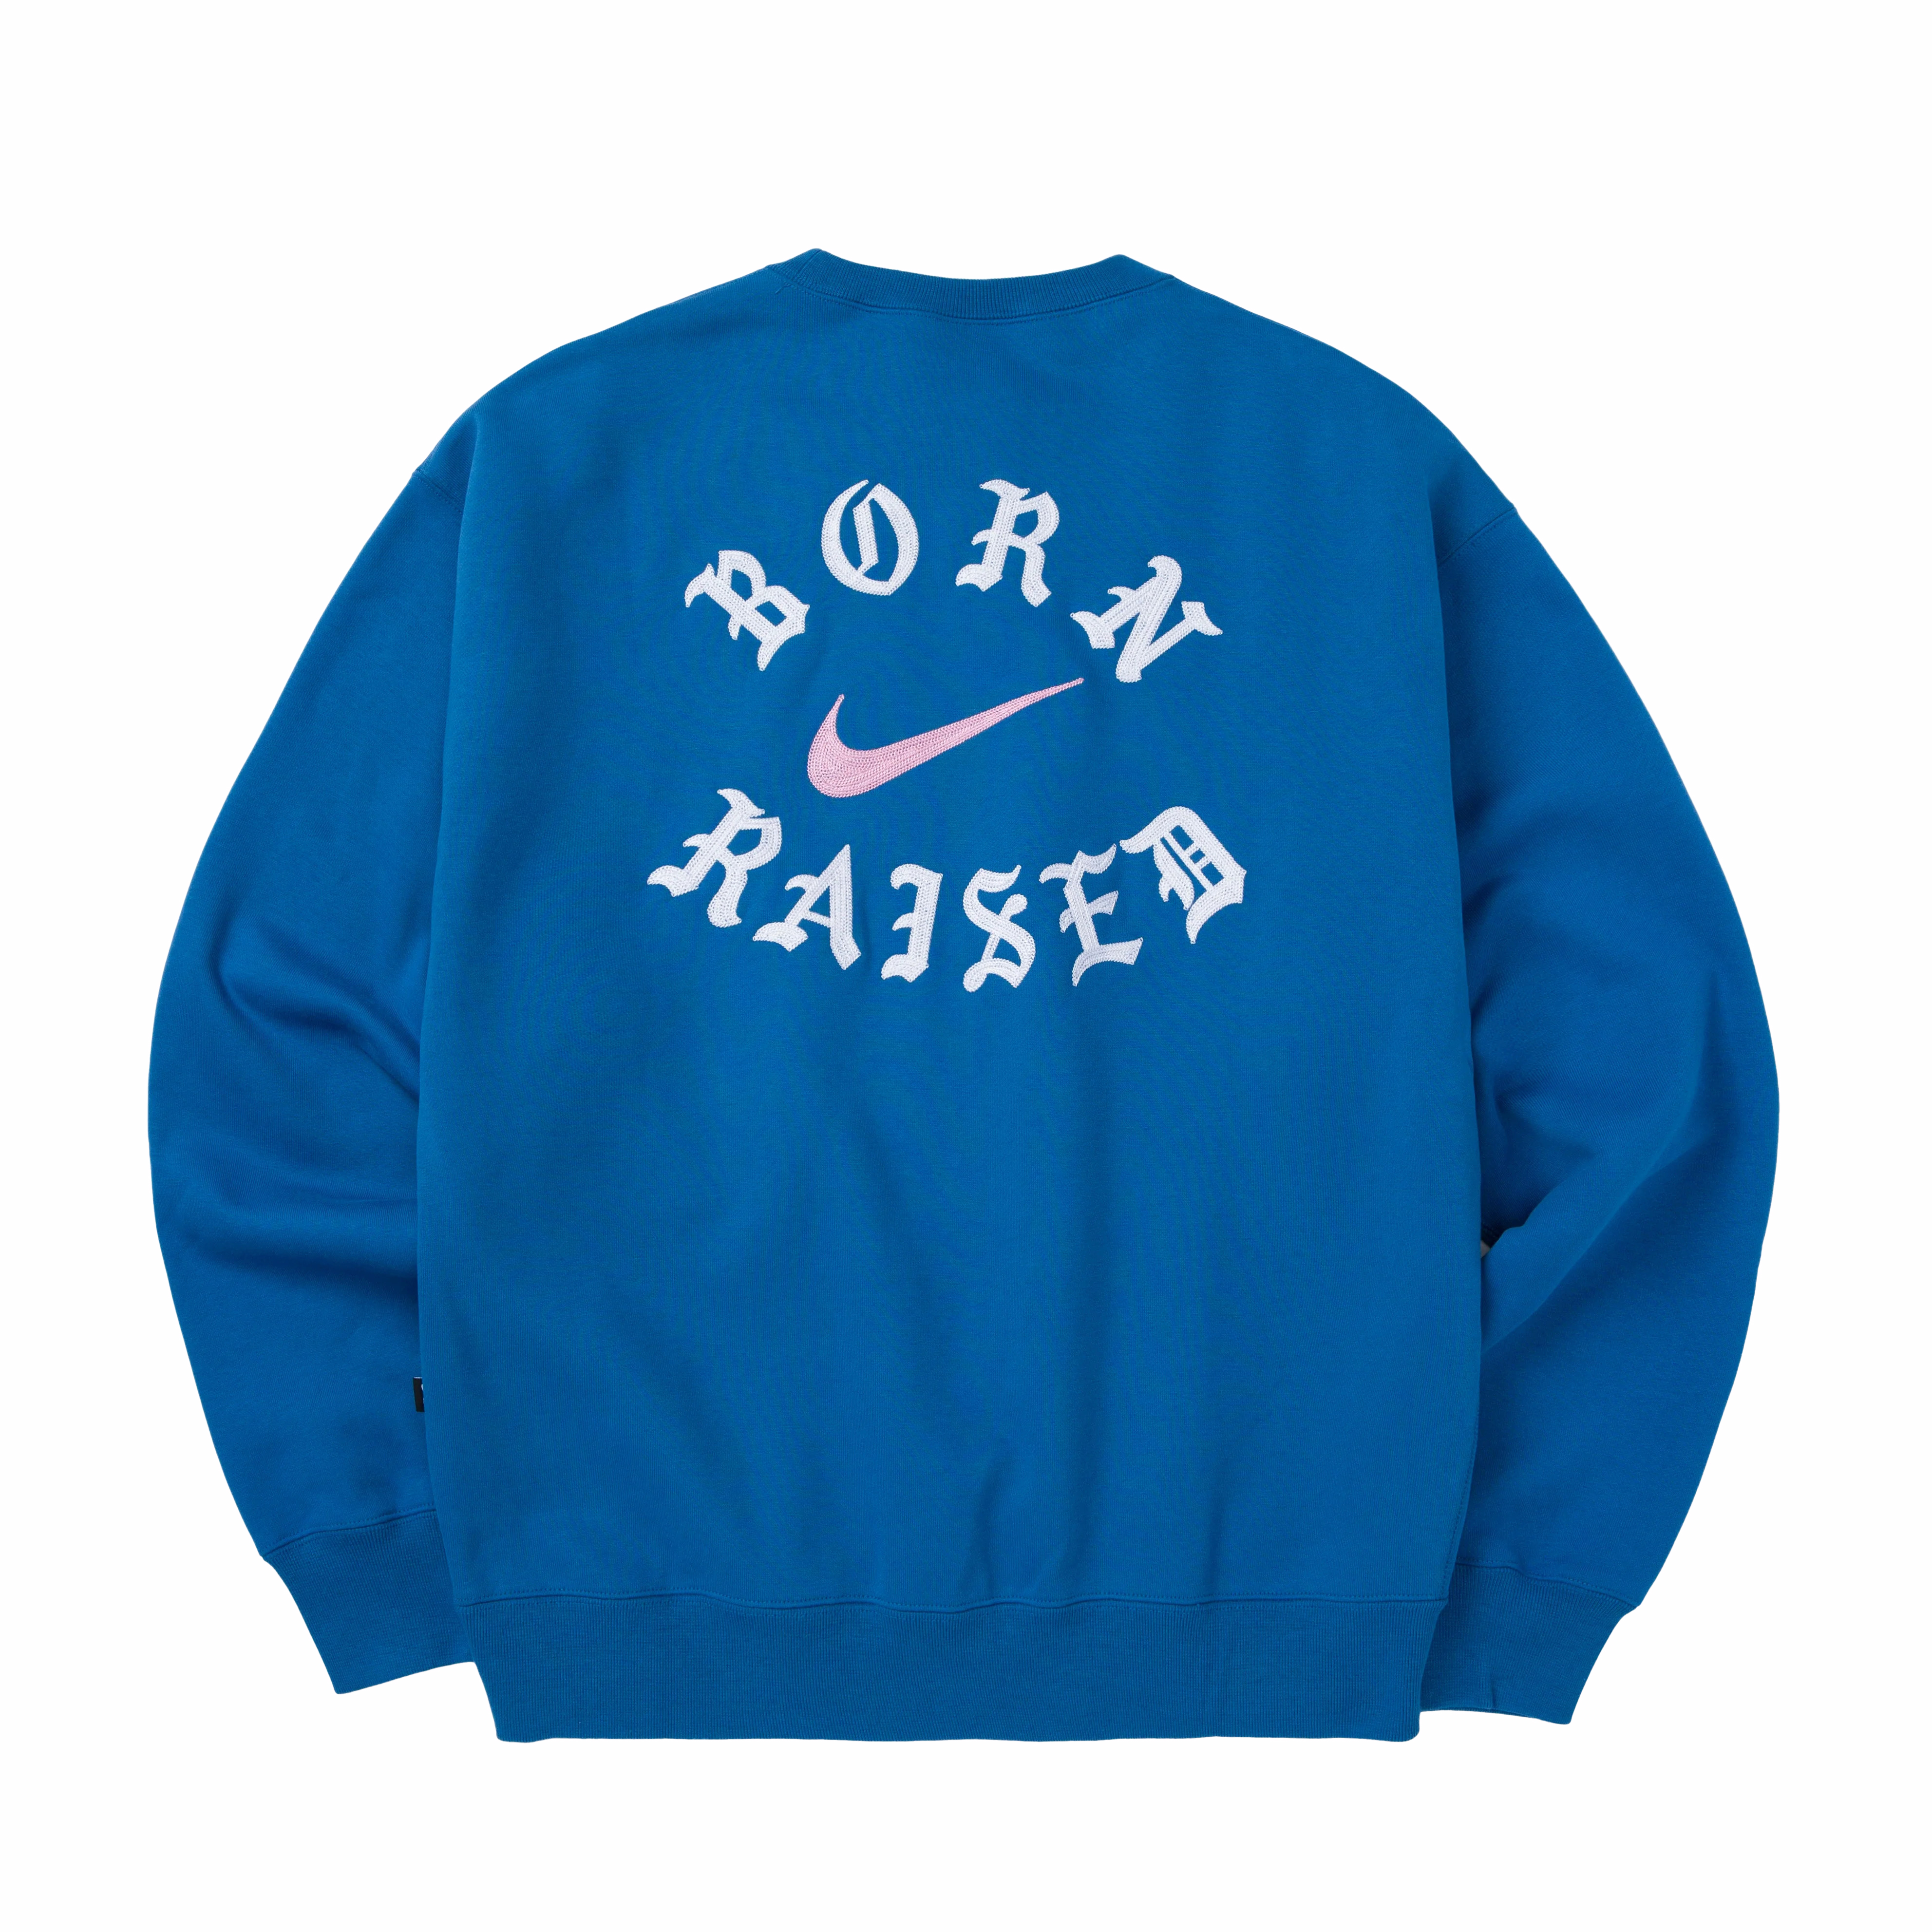 Nike SB Born X Raised CrewneckSweatshirt購入を検討しているのですが